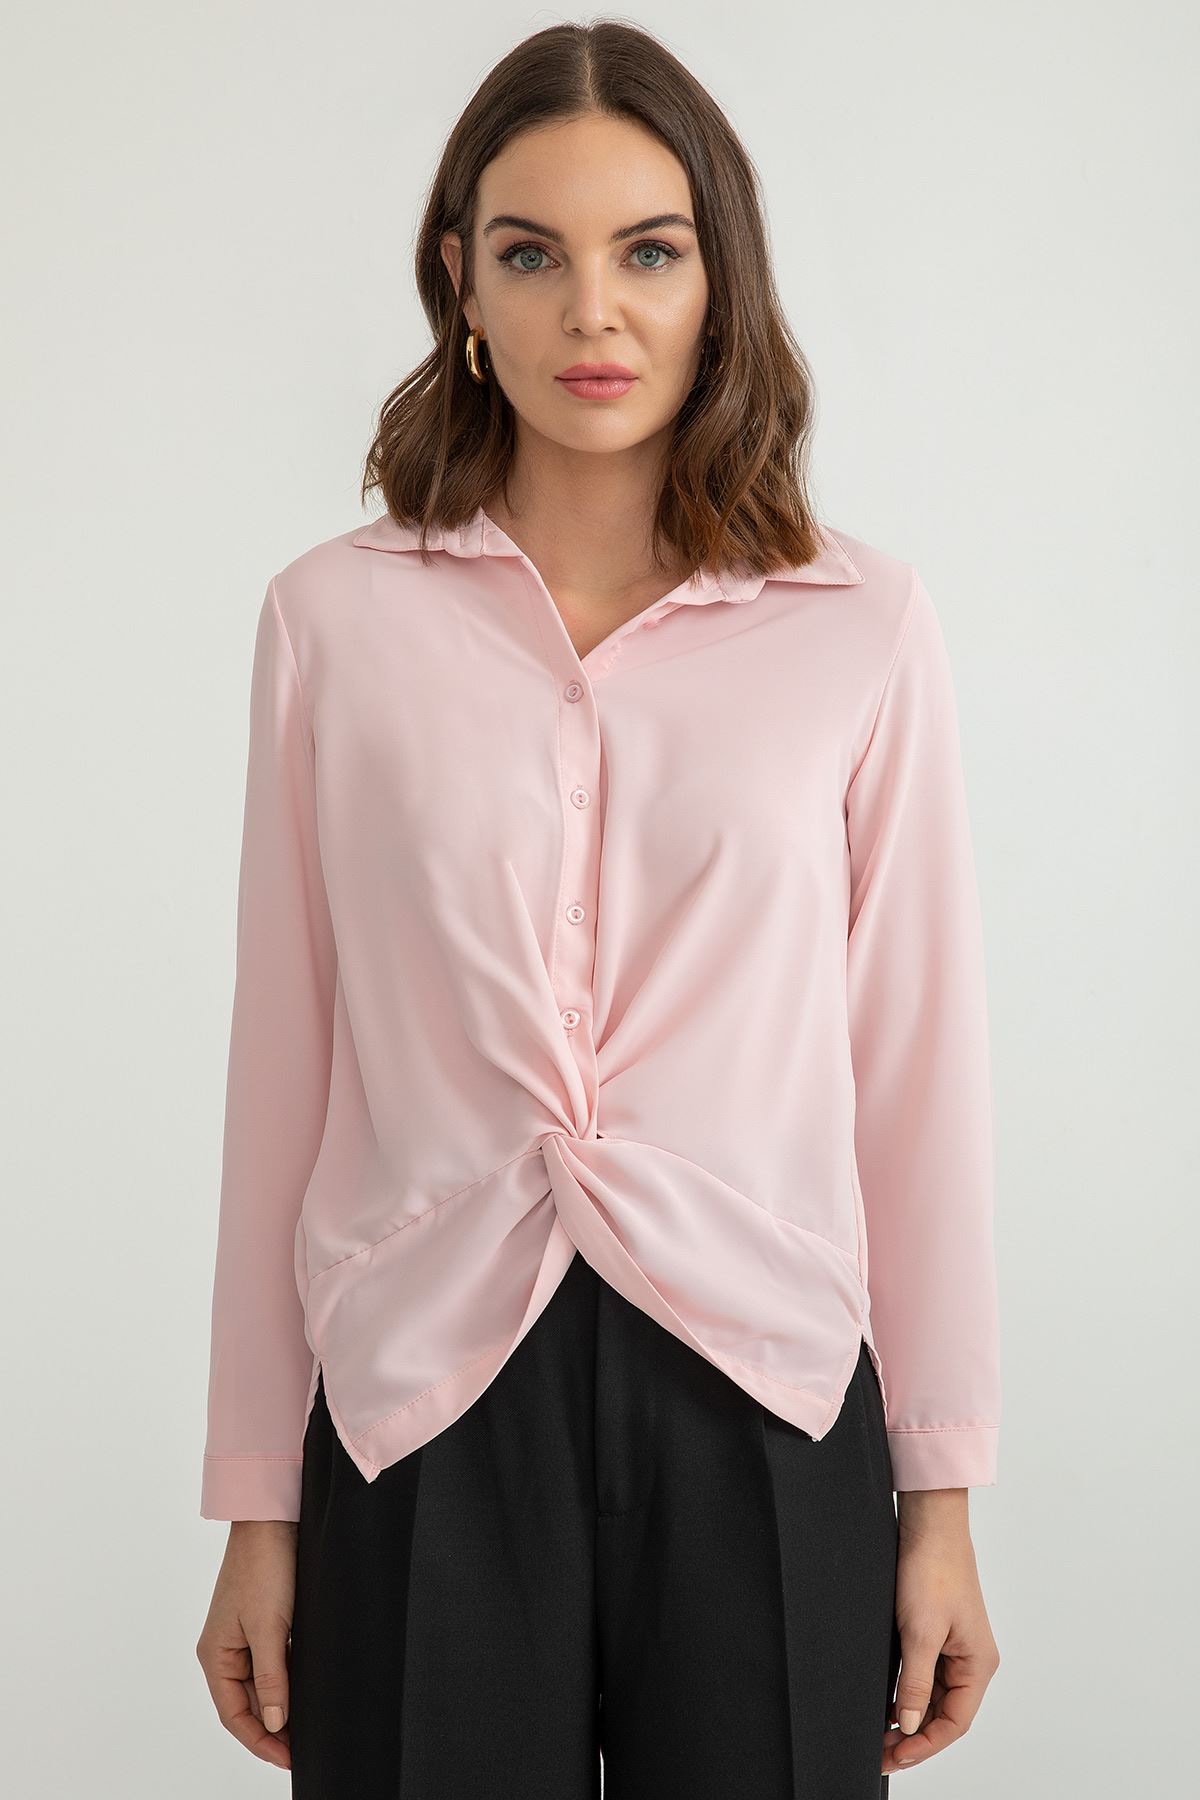 Jesica Fabric Long Sleeve Classical Button Front Women'S Shirt - Light Pink